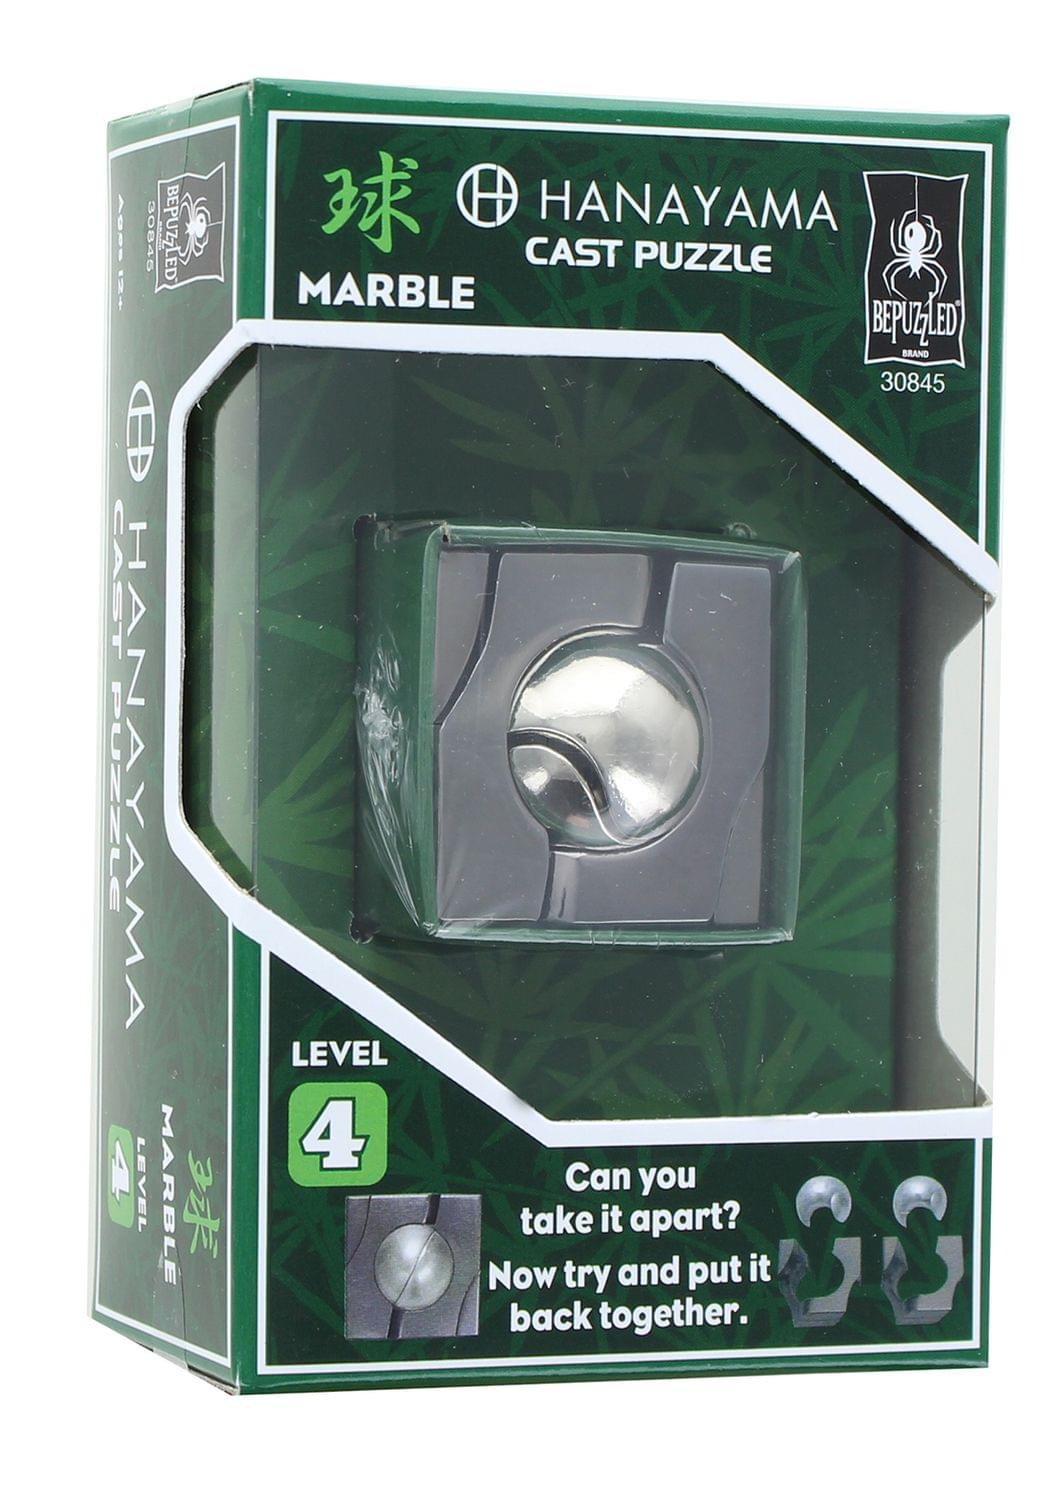 Hanayama Level 4 Cast Metal Brain Teaser Puzzle - Marble